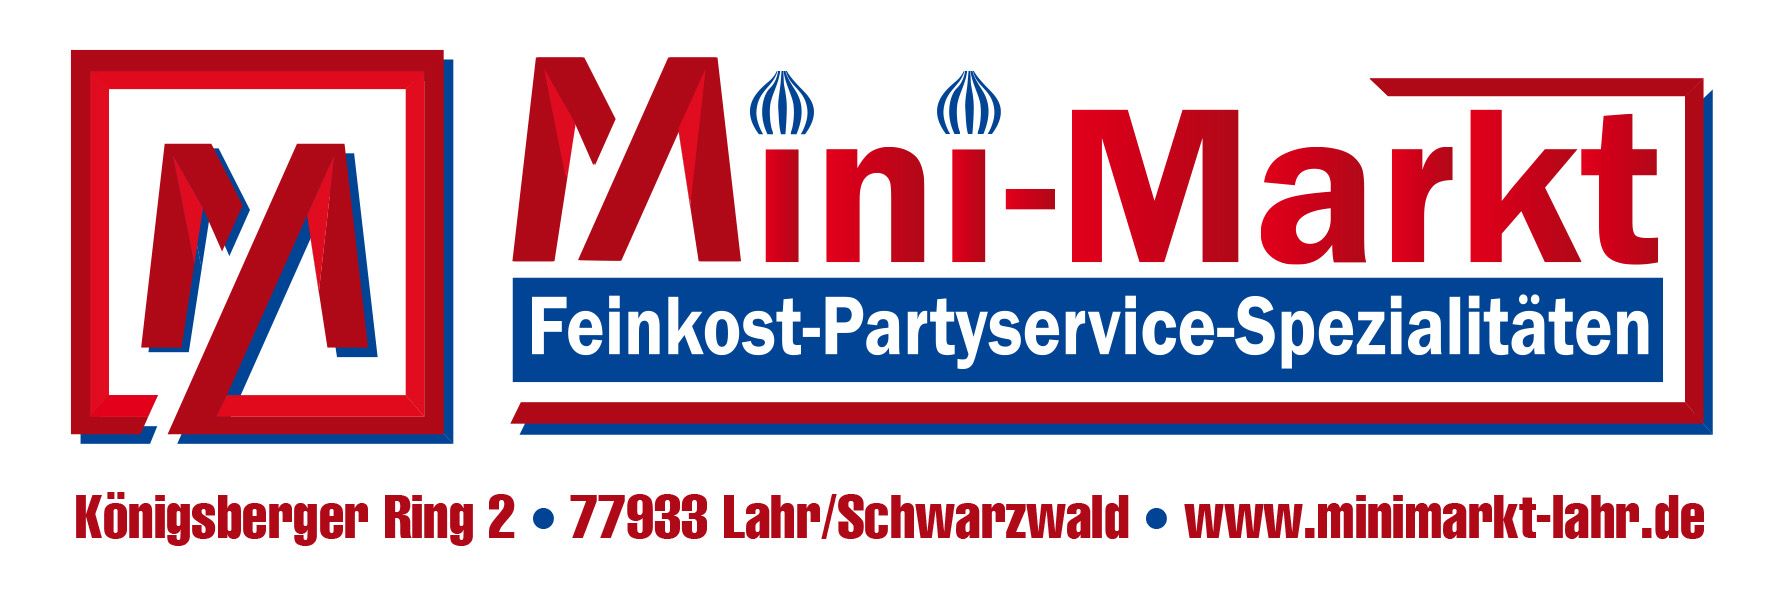 Mini-Markt Feinkost-Partyservice-Spezialitäten